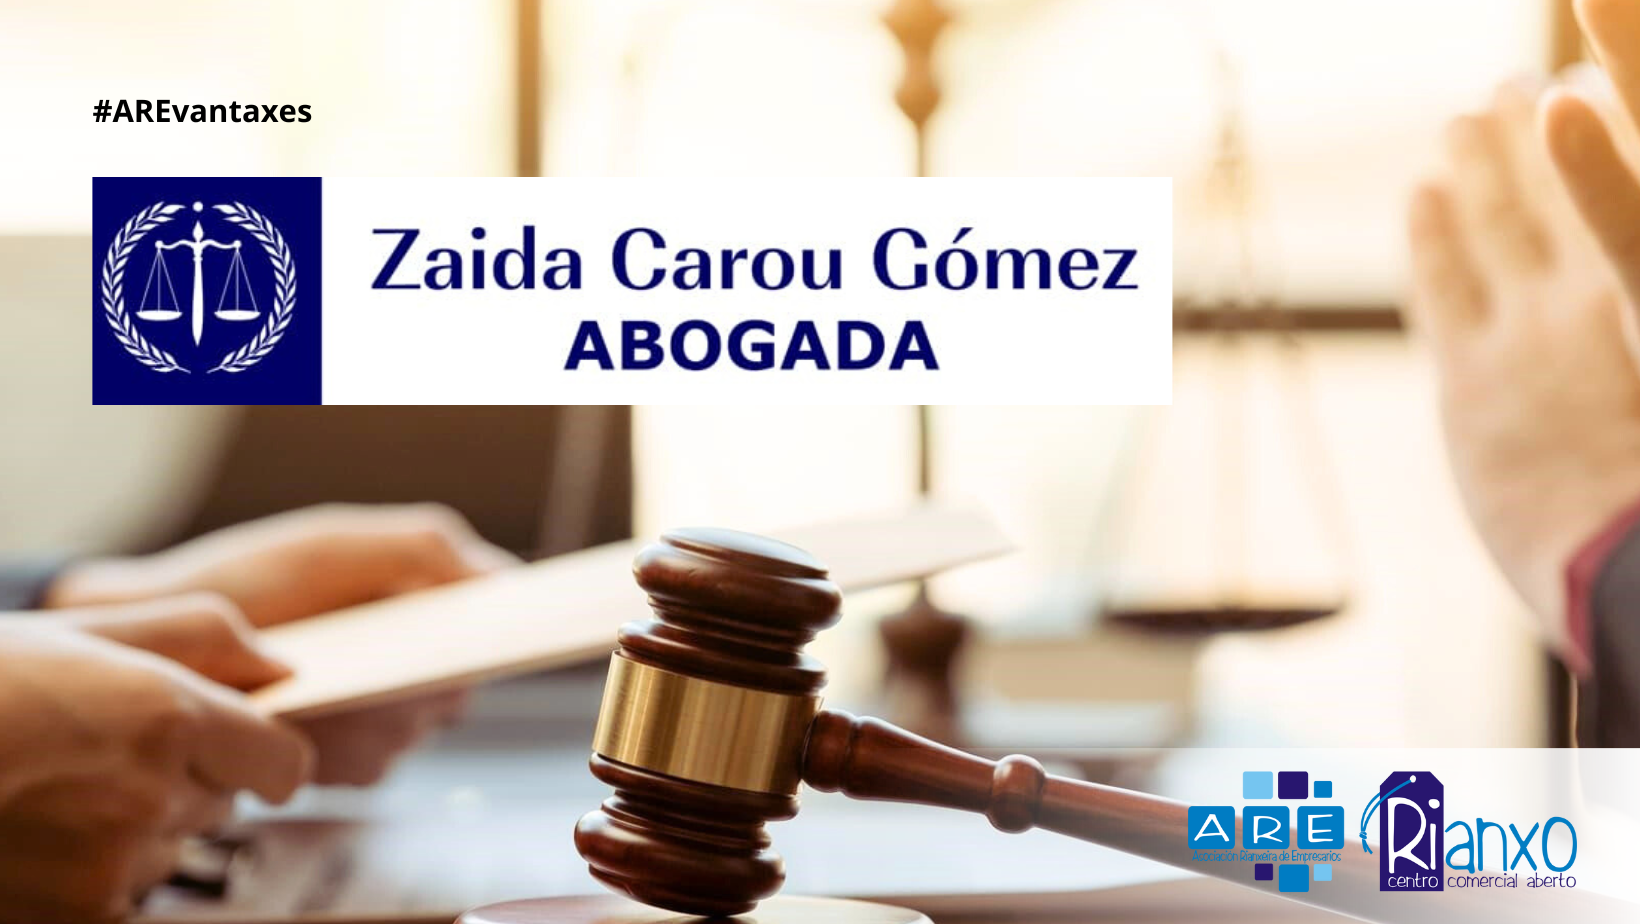 Zaida Carou Gómez Abogada